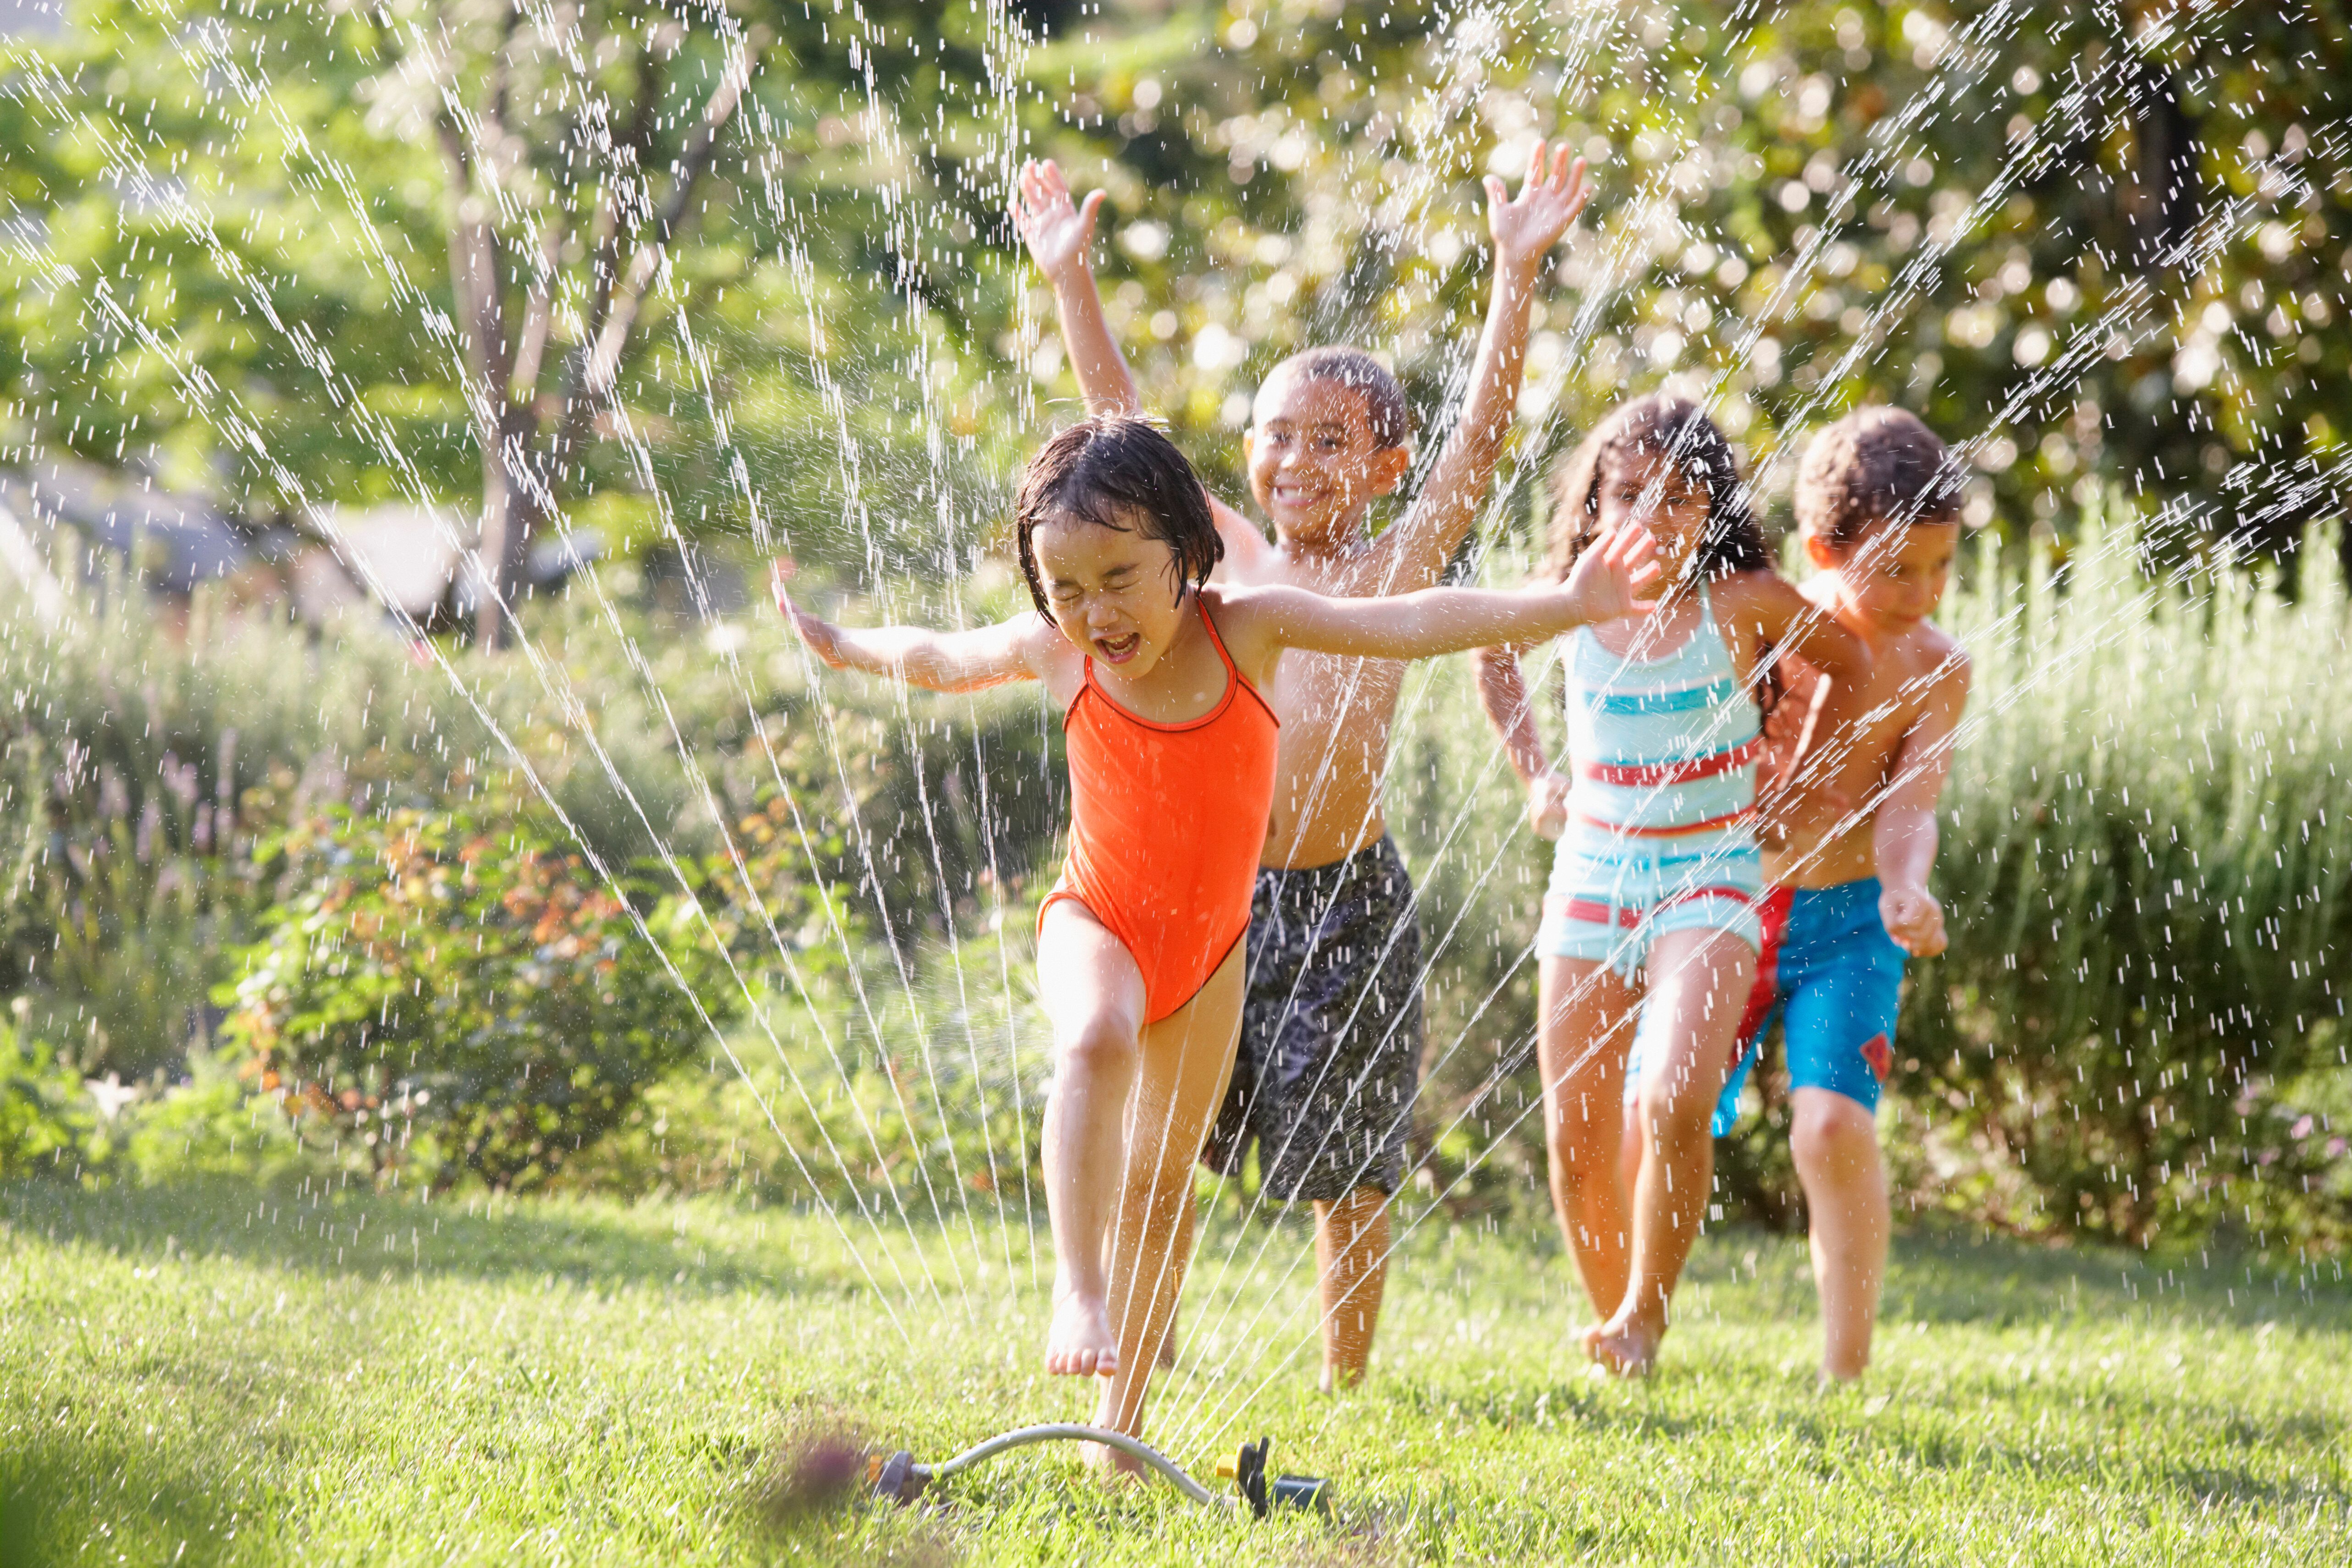 Kids in Sprinkler